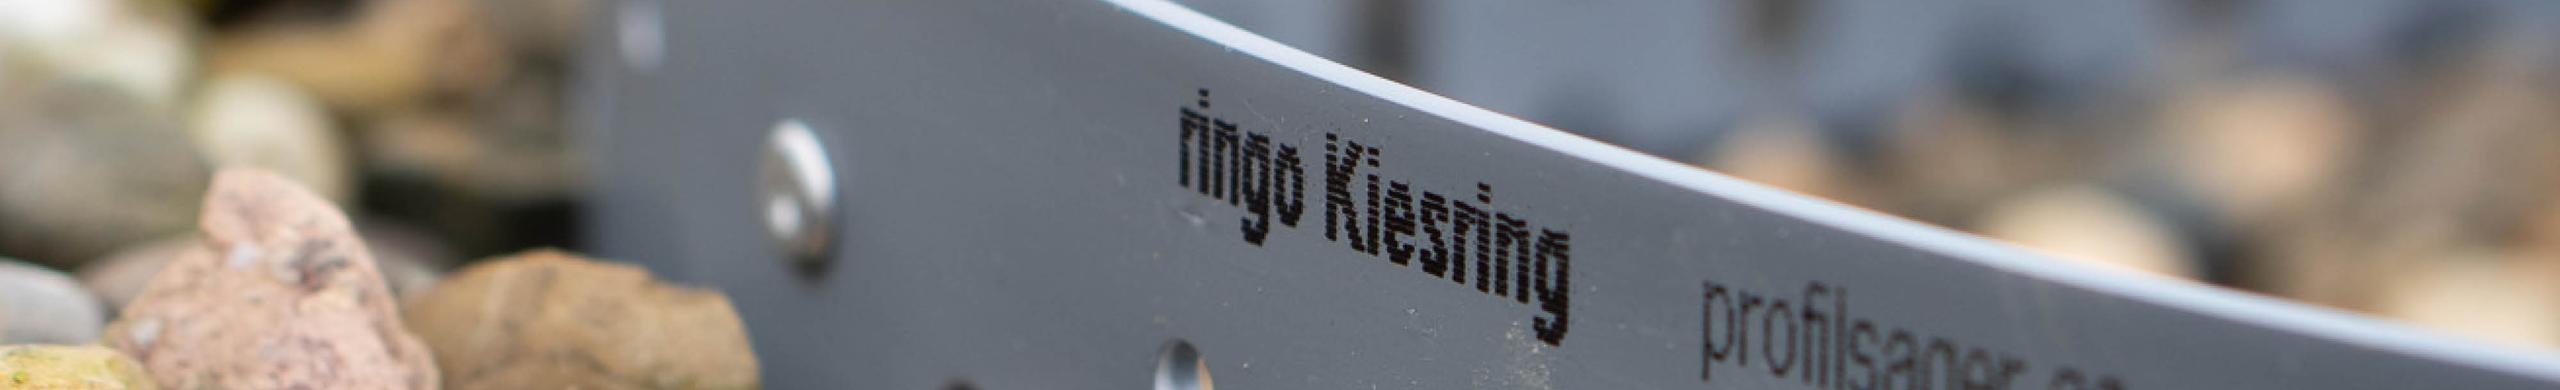 Neue Lösung für Flachdächer: Der ringo Kiesring für einfache Dachkies-Rückhaltung